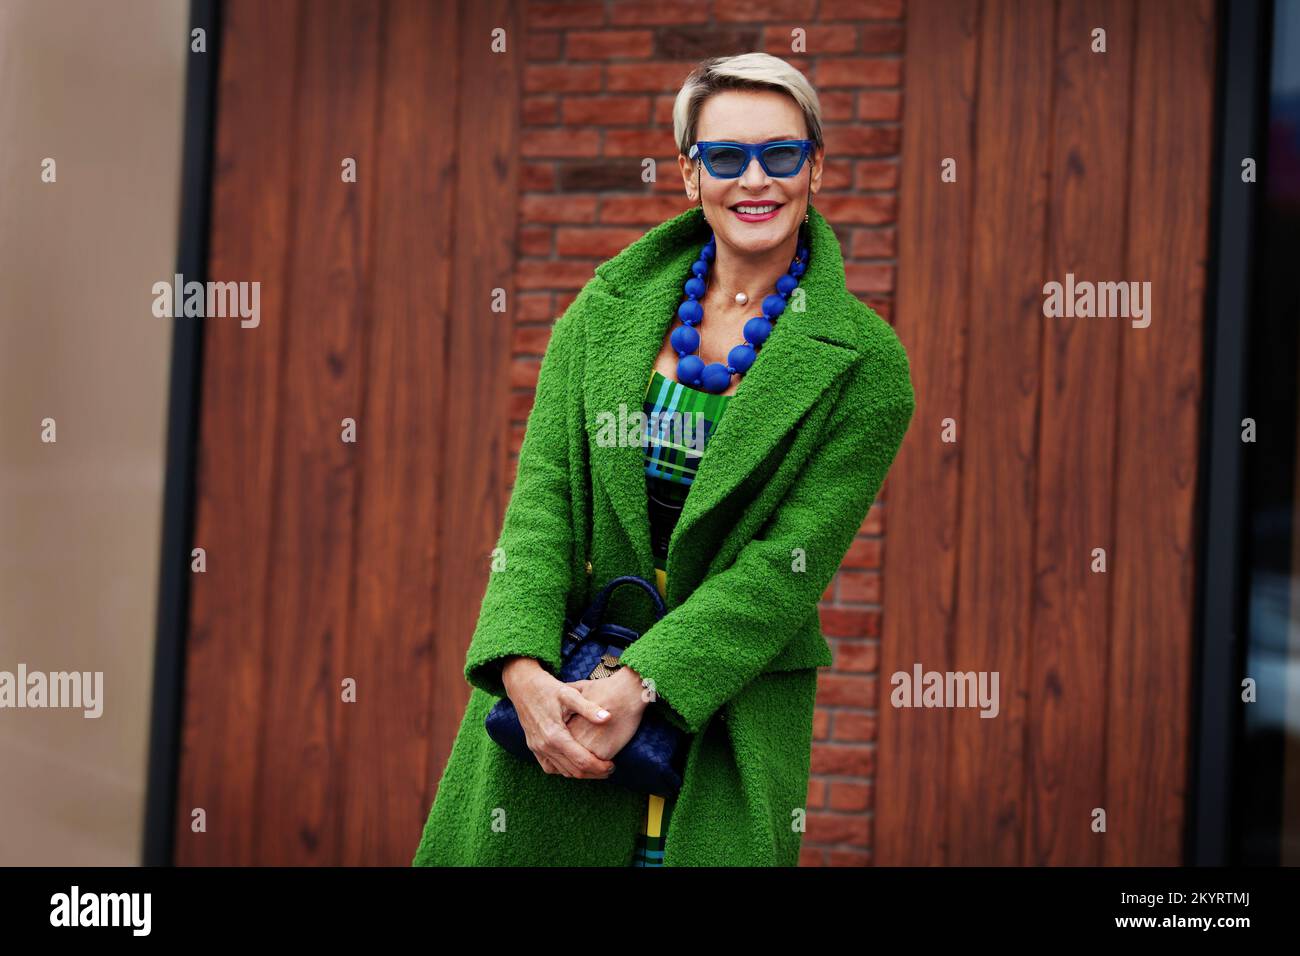 Porträt einer lächelnden stilvollen Frau mit grünem Mantel und blauen Accessoires. Farbenfrohes, trendiges Outfit. Glückliches 45-50-jähriges Modell mit kurzer Fash Stockfoto